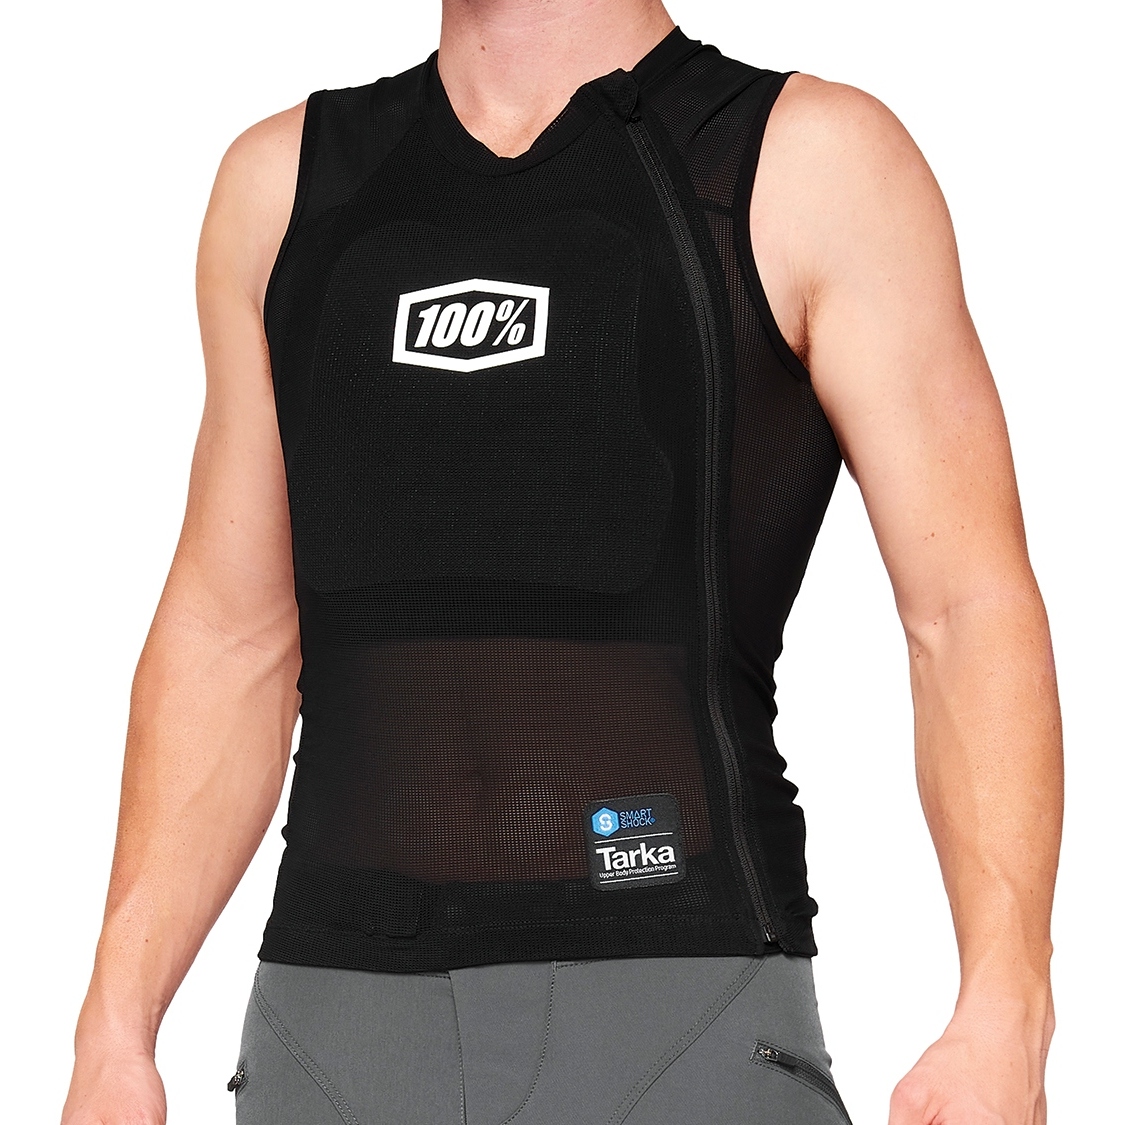 Image of 100% Tarka Protection Vest - black